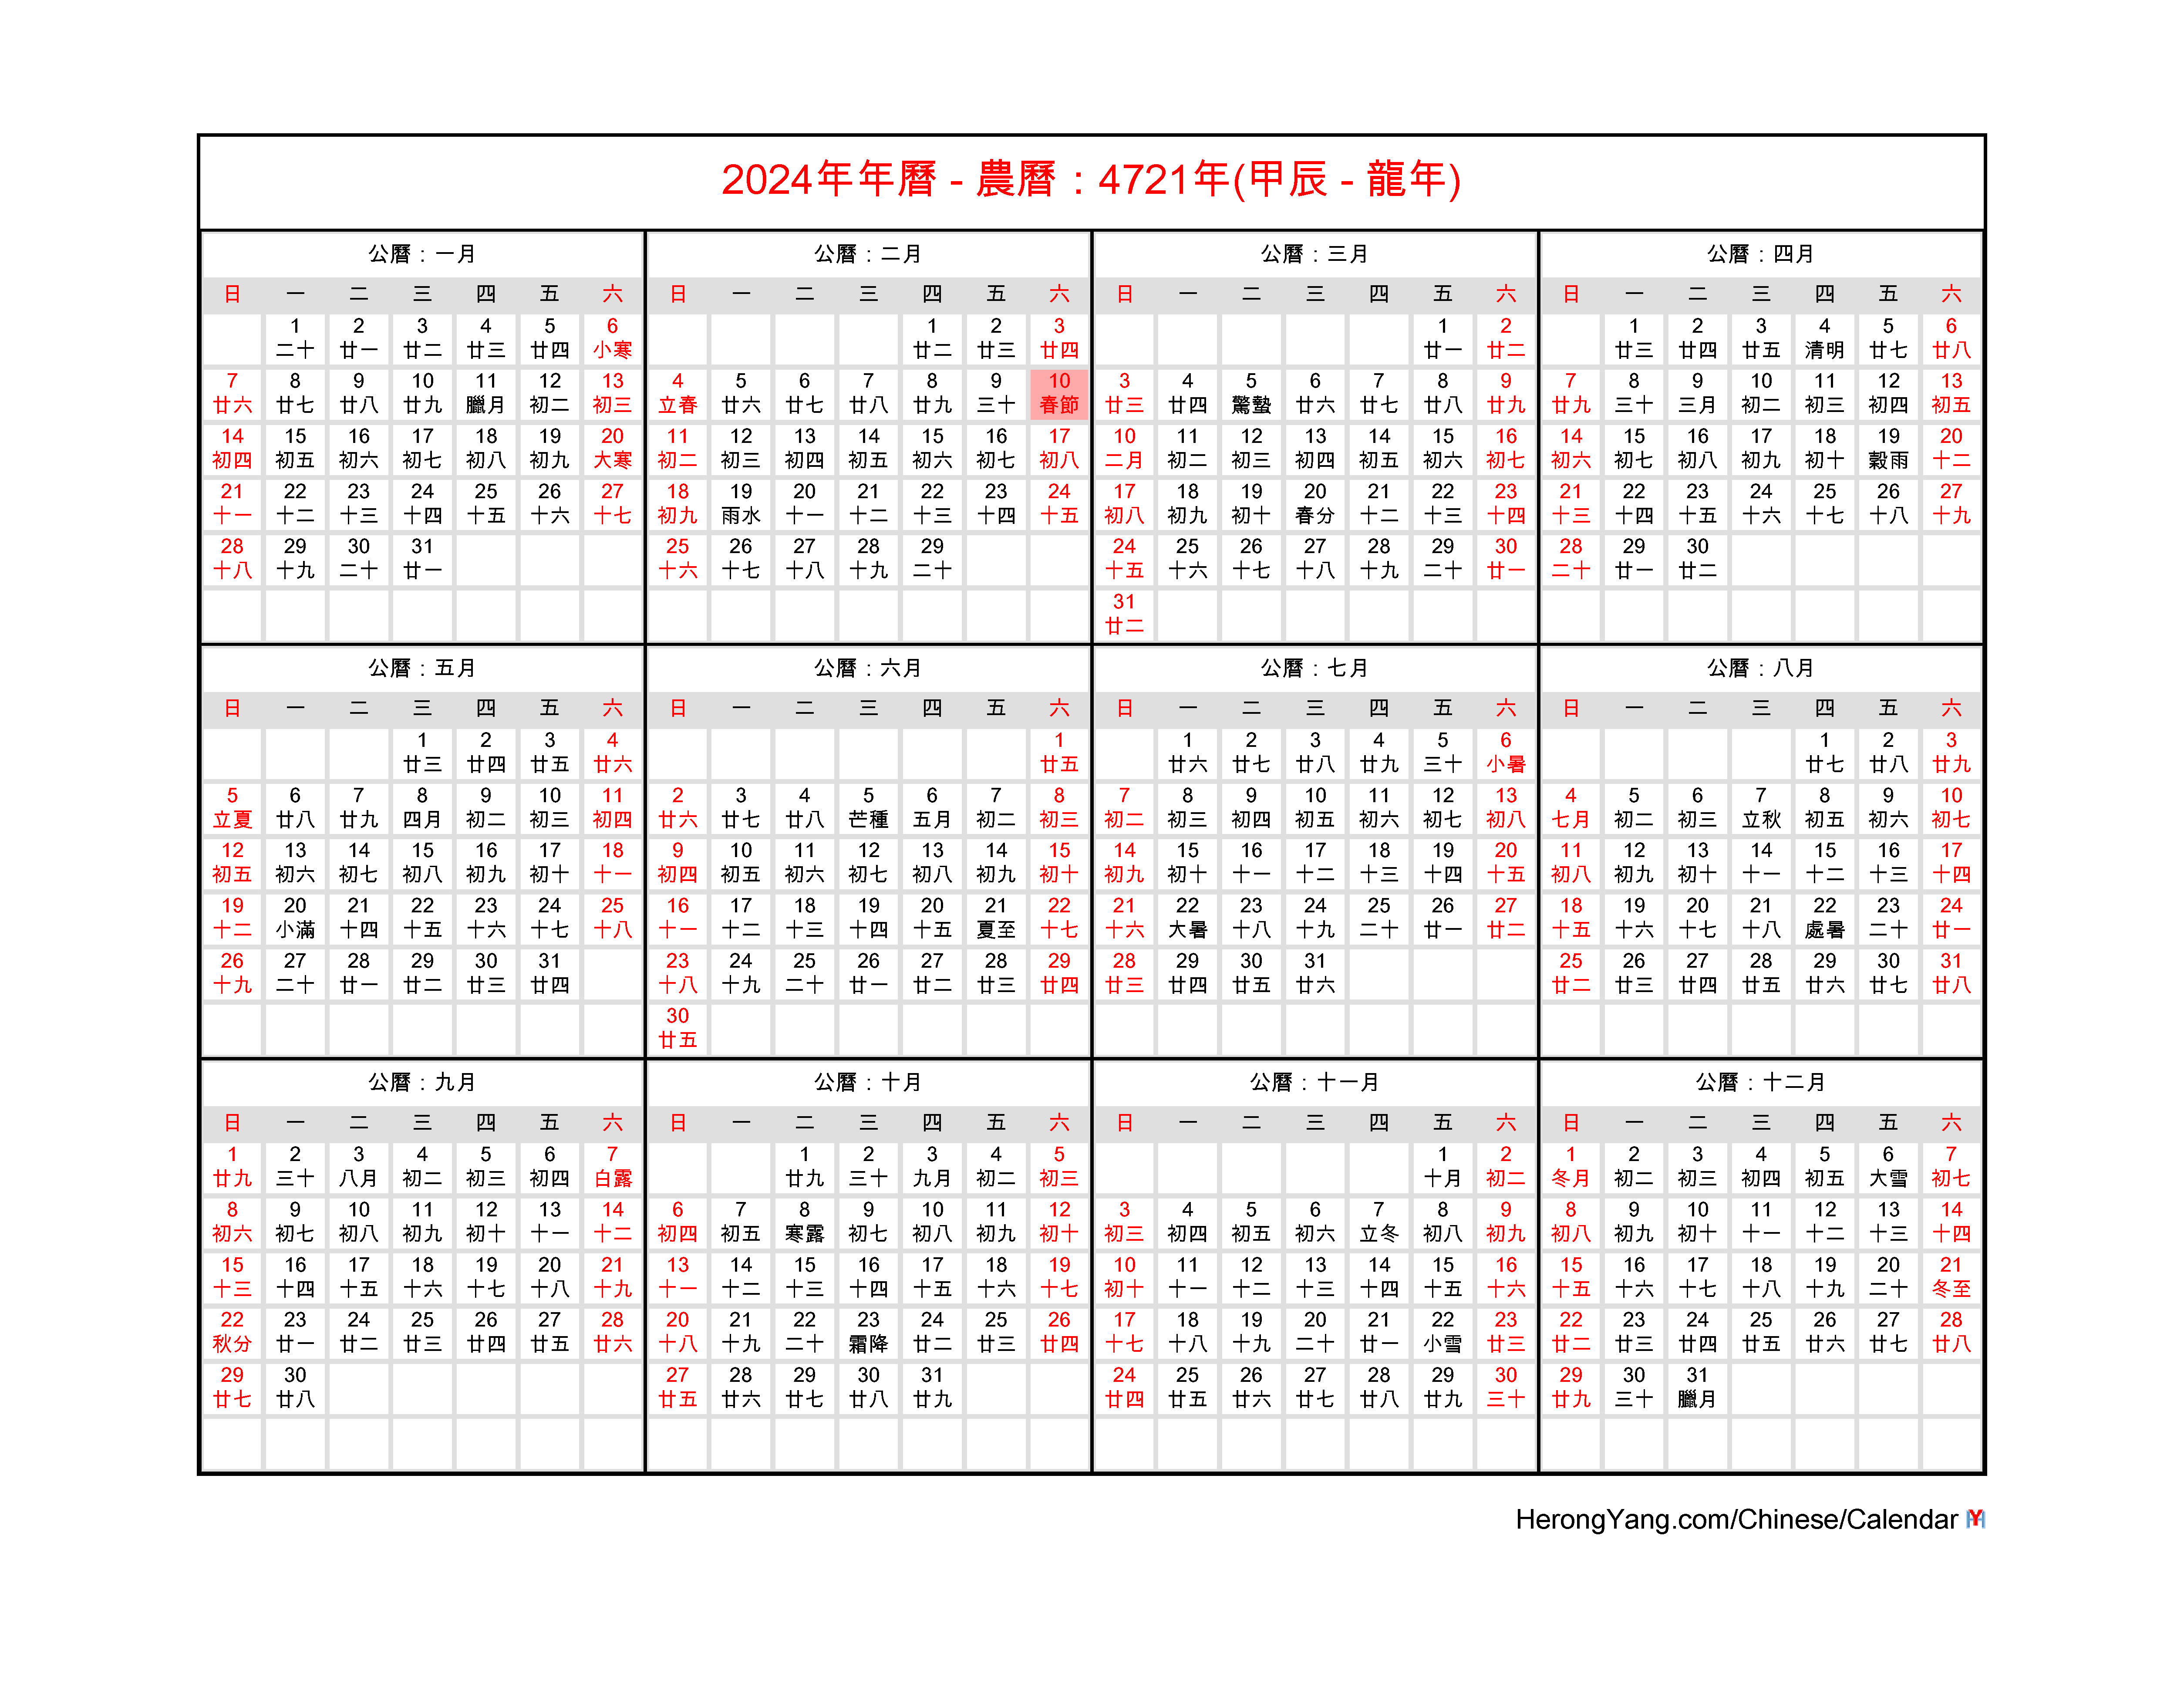 Hong Kong Holiday Calendar 2024 Year bird kassie